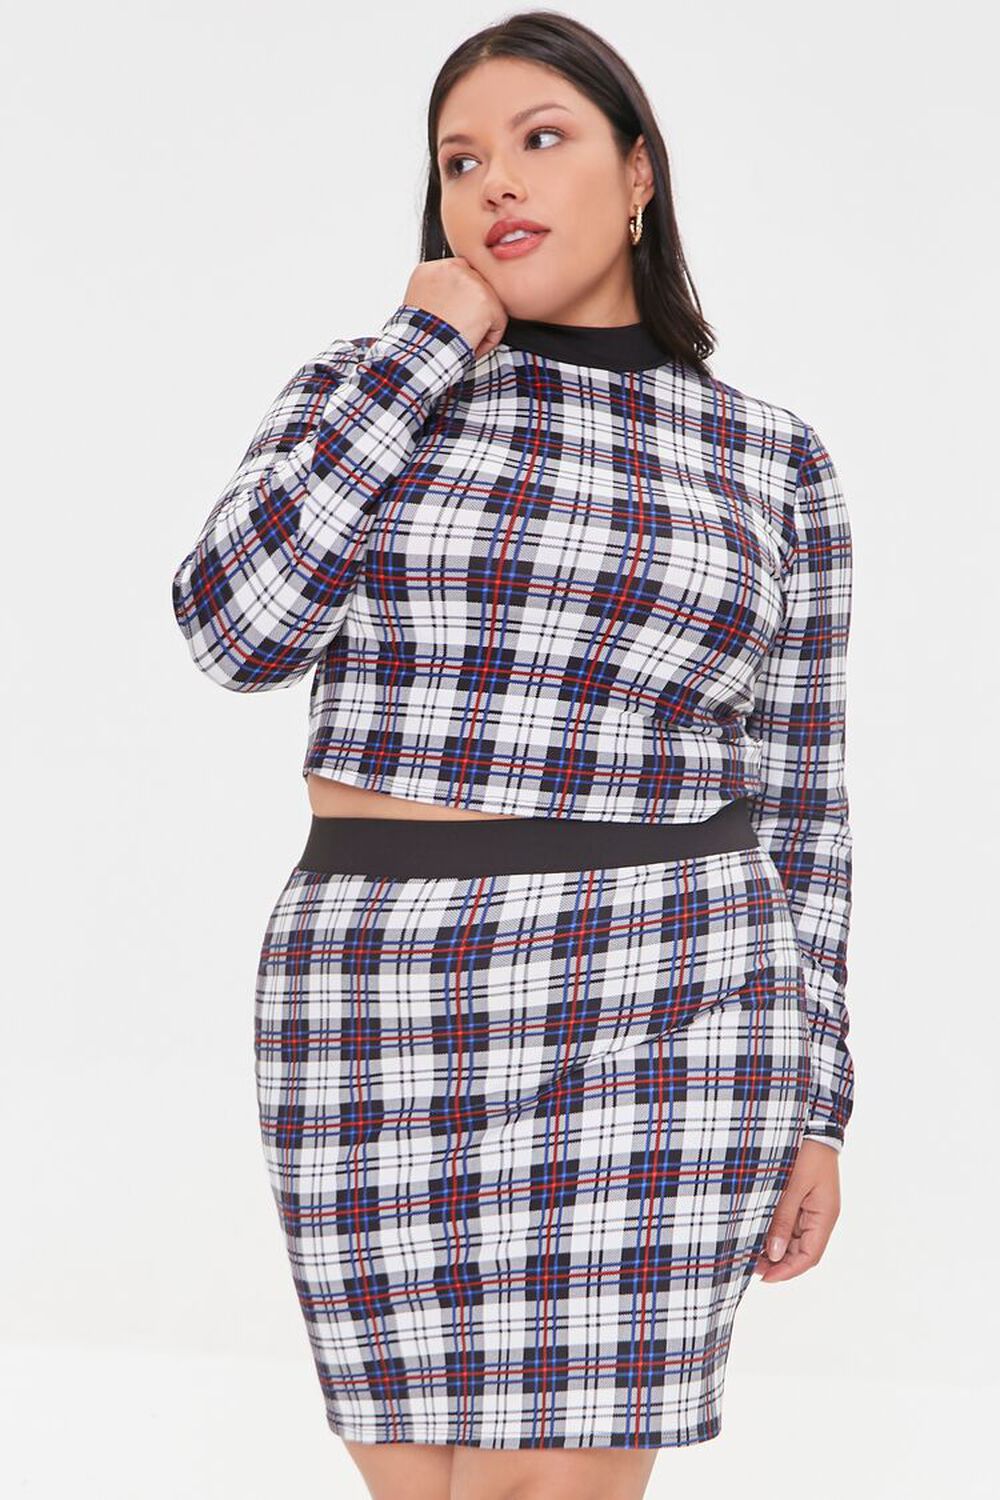 BLACK/WHITE Plus Size Plaid Top & Mini Skirt Set, image 1